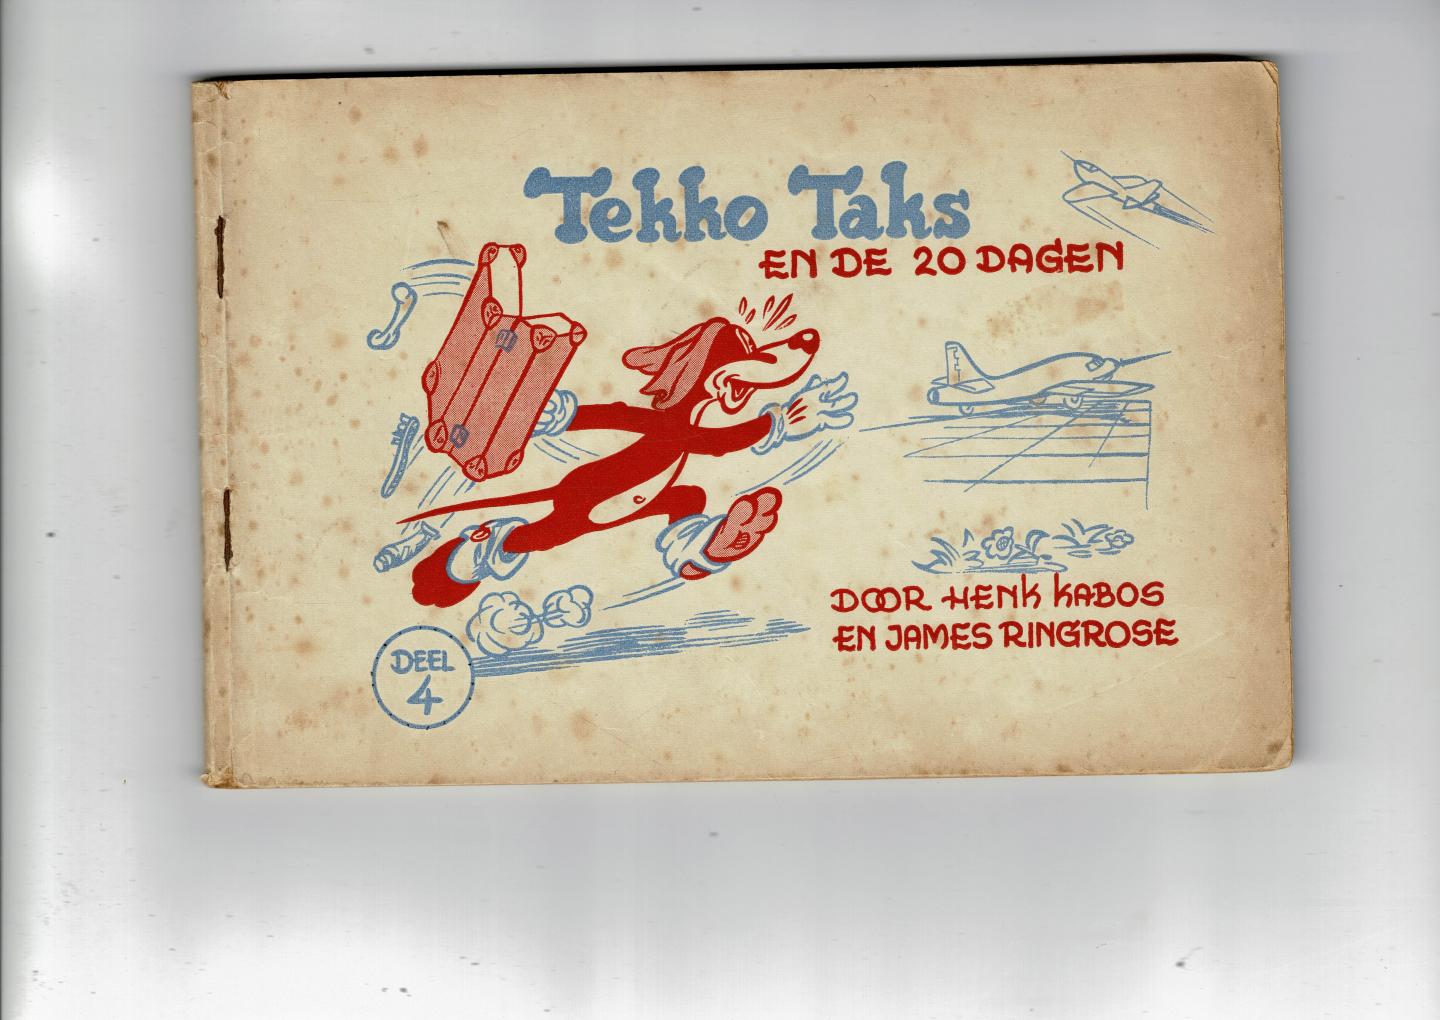 Kabos,Henk - Tekko Taks deel 4 Tekko Taks en de 20 dagen